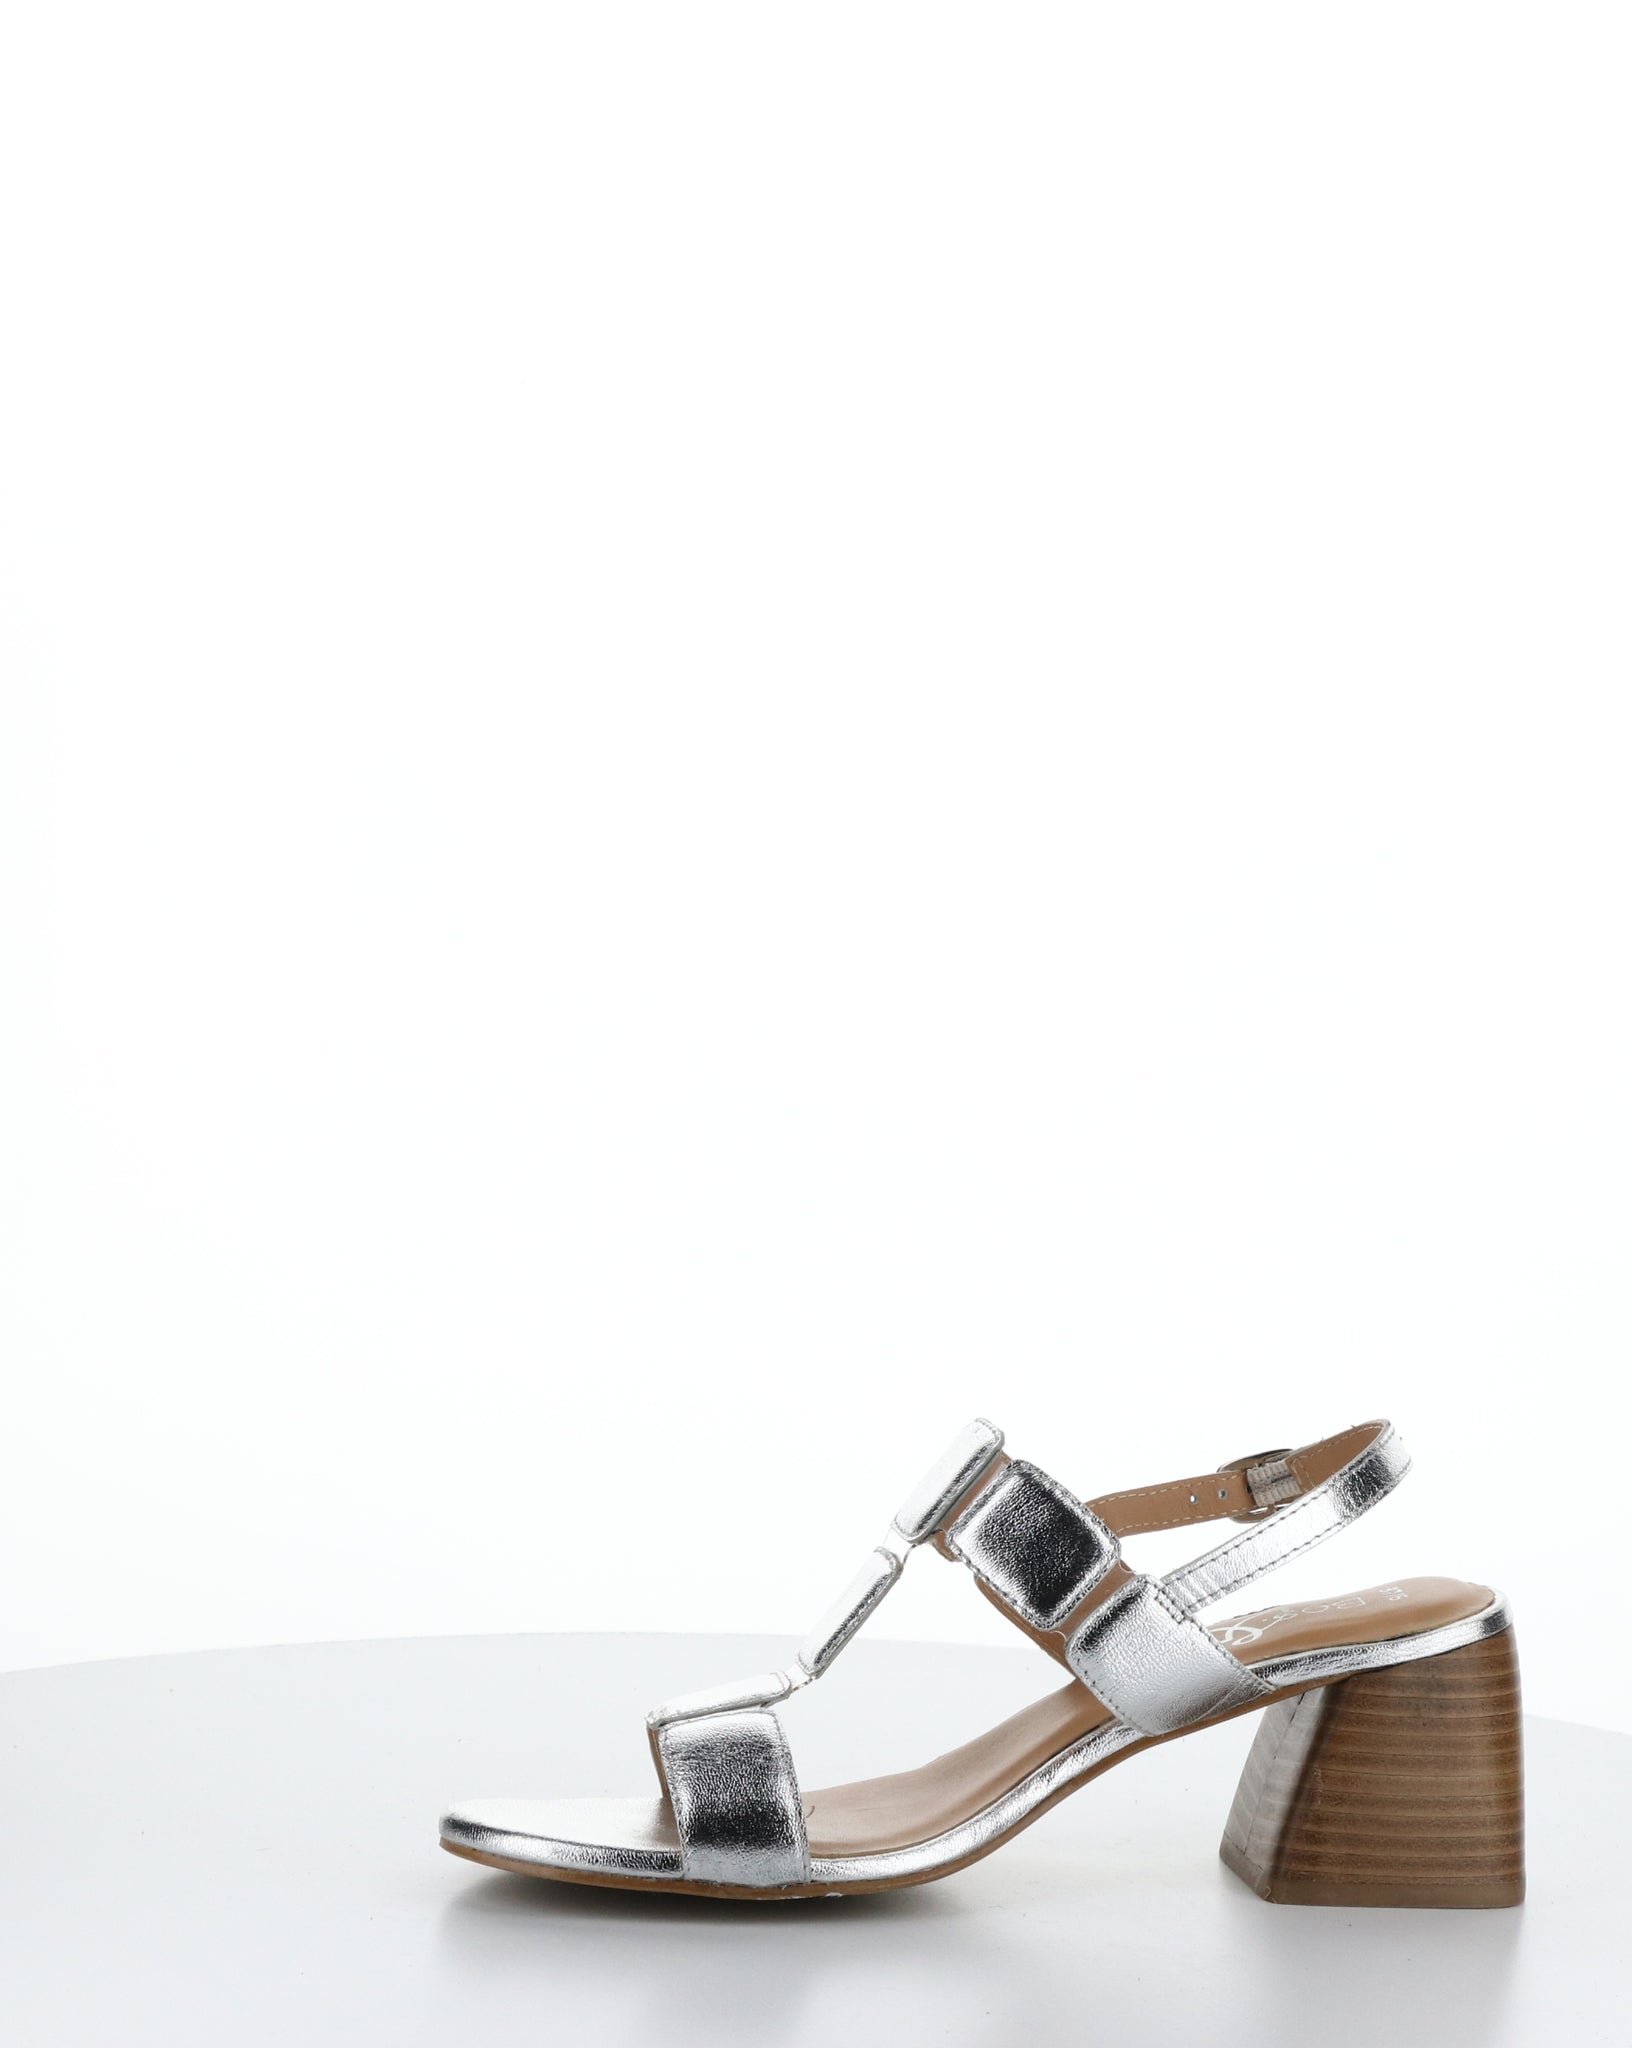 Bos & Co "Glow" Silver block heel sandal